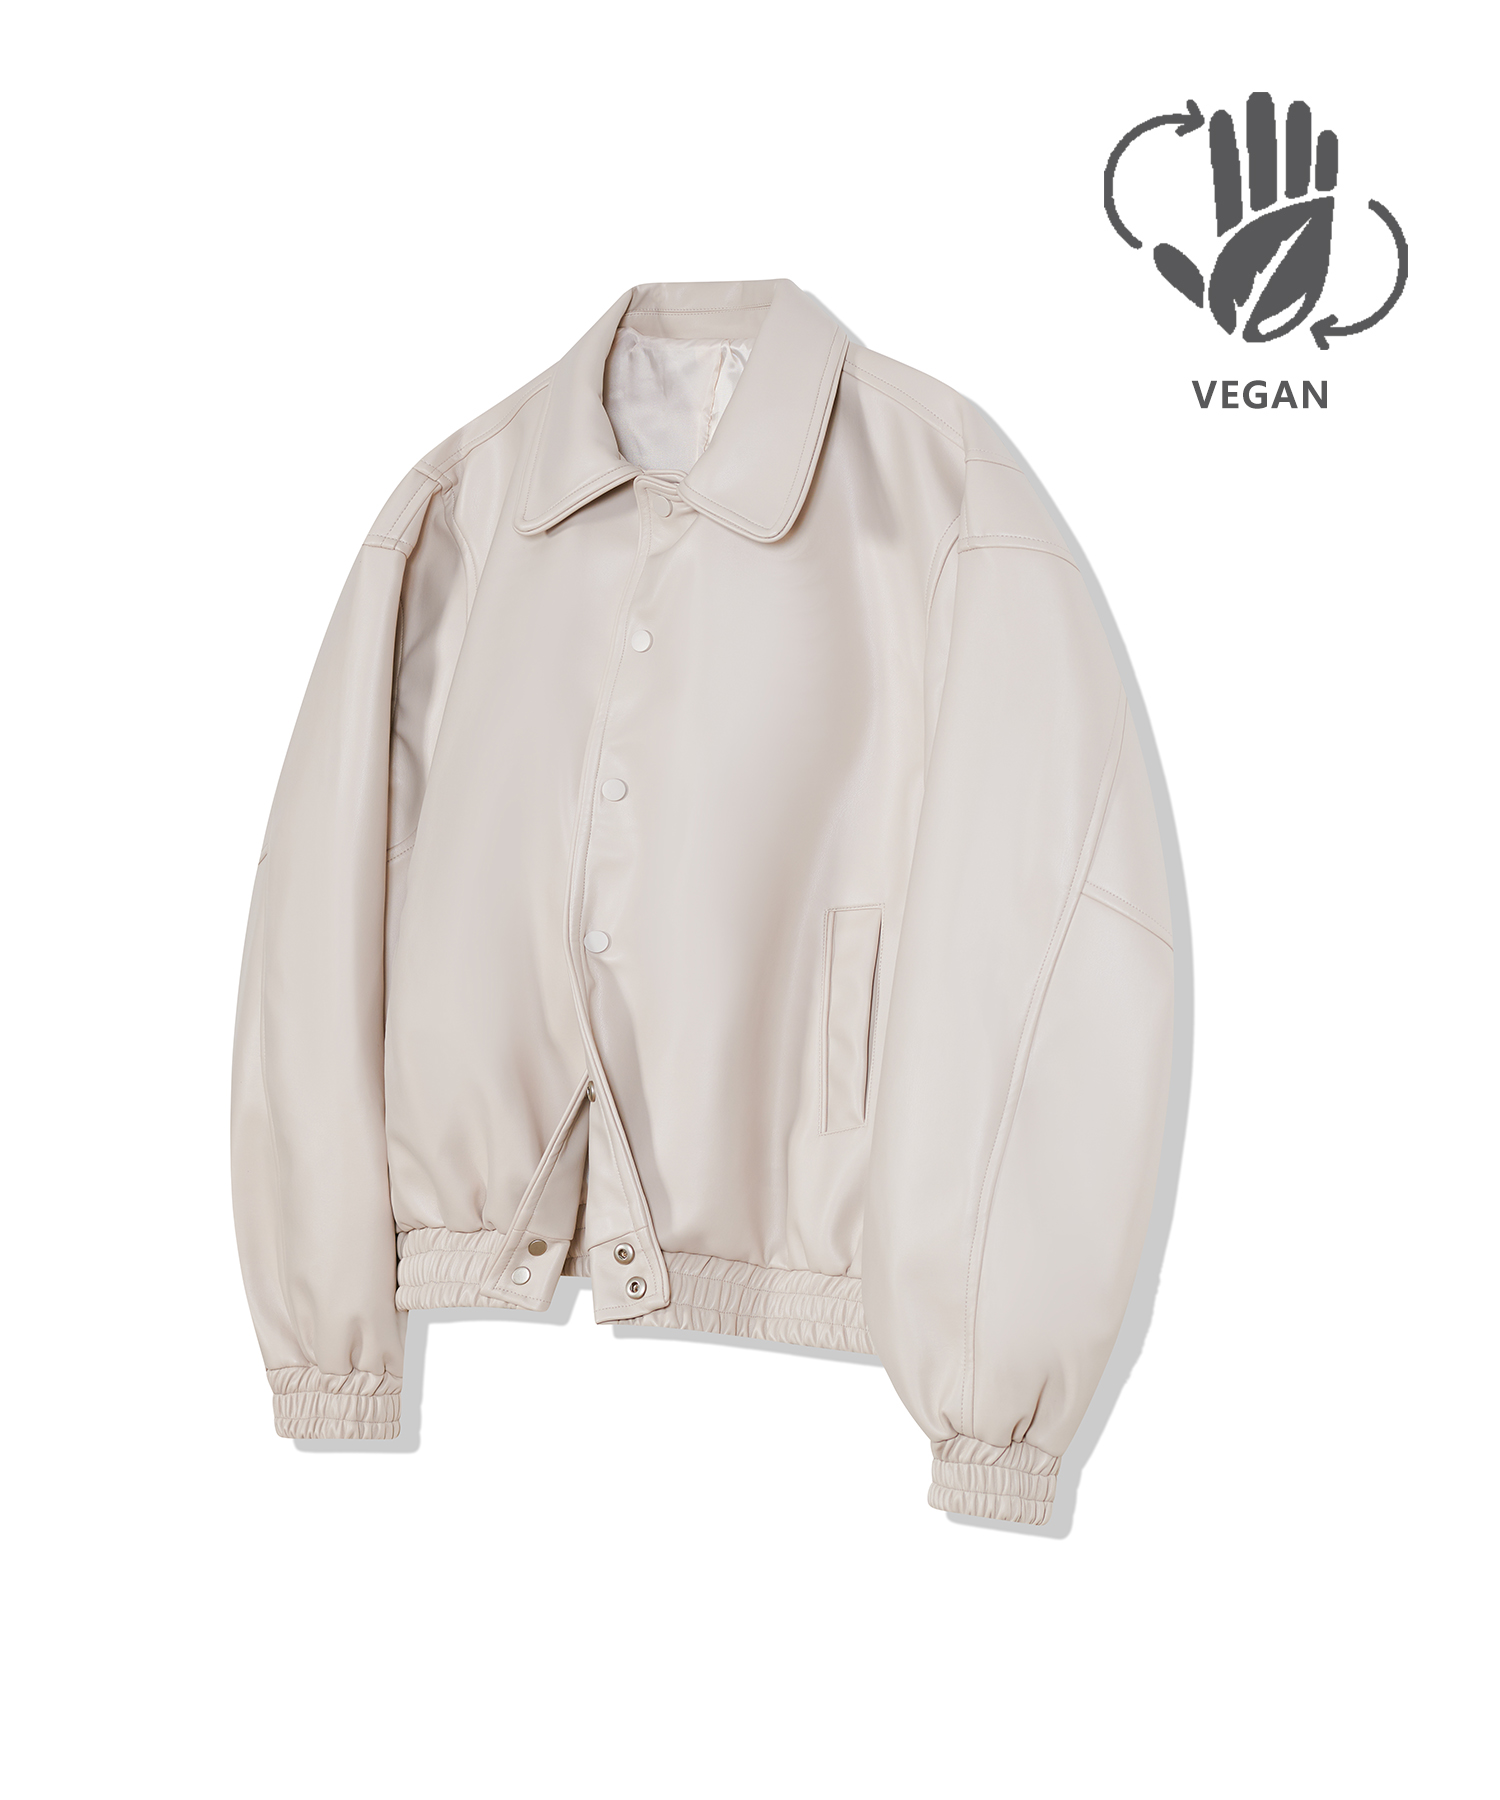 87-STAN030 [Vegan Leather] Bold Stitch Line Varsity Leather Jacket Ivory